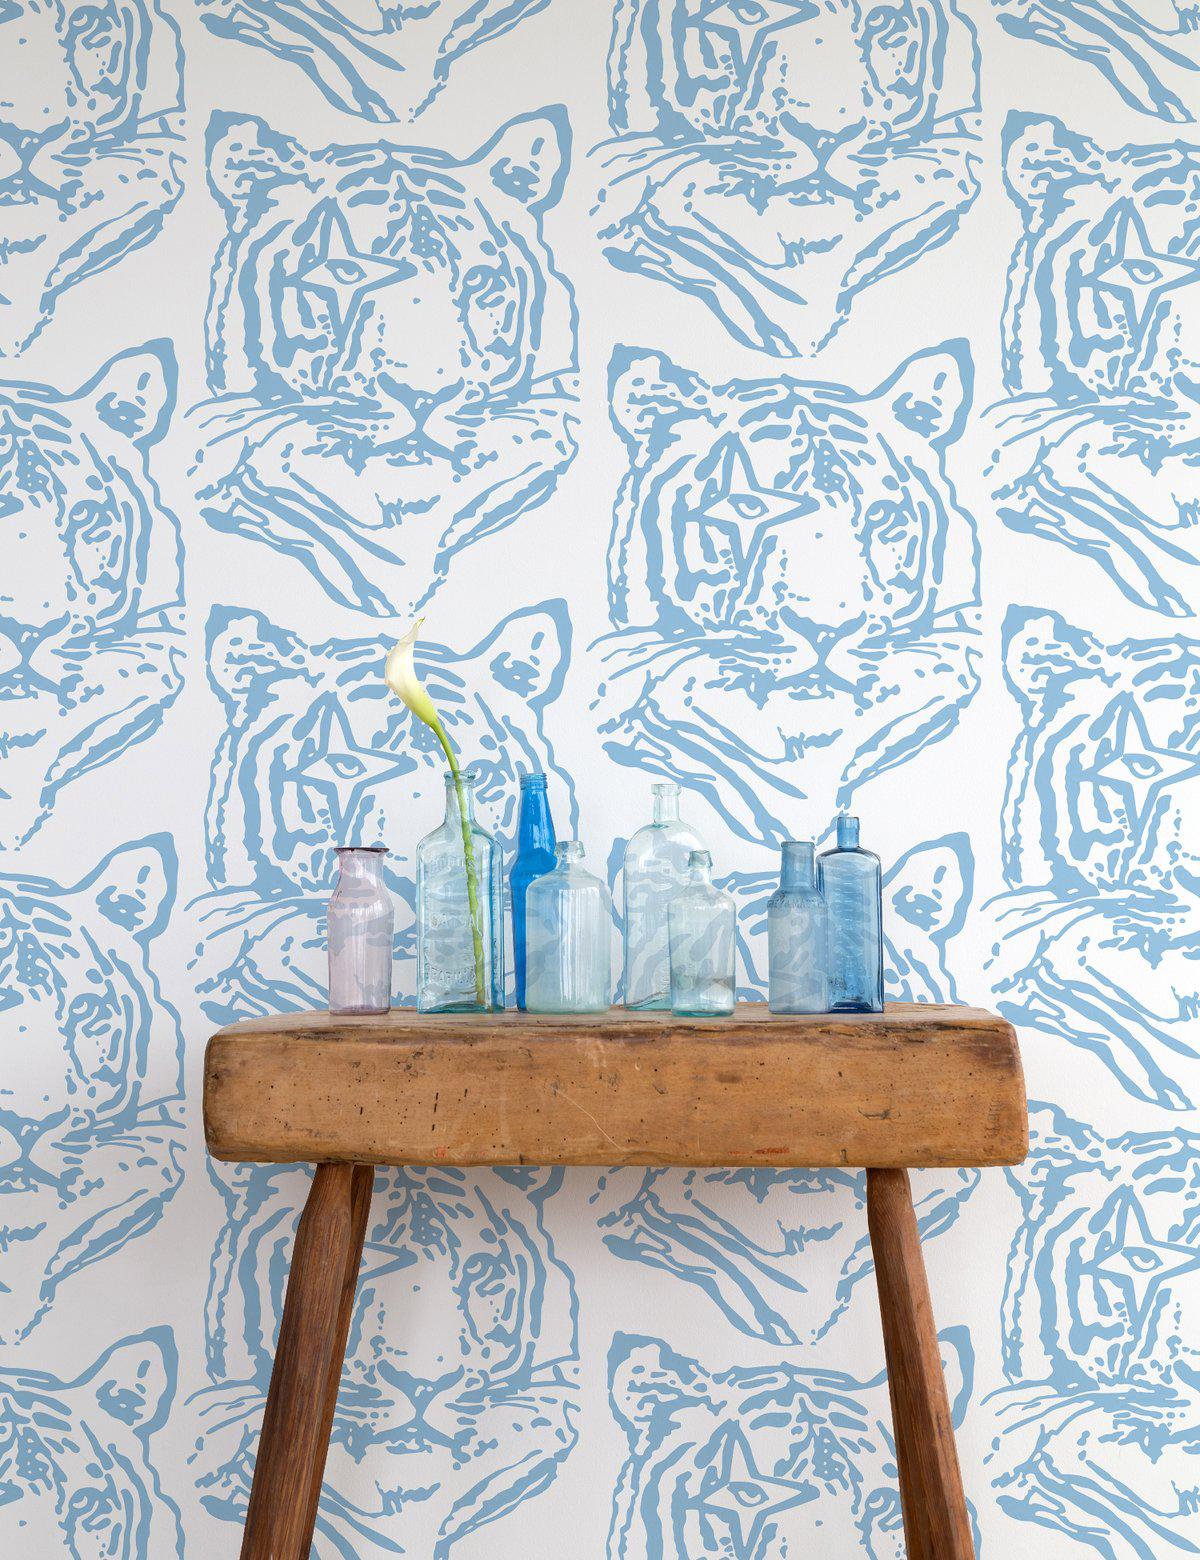 Ce magnifique papier peint tigre étoilé, fruit d'une collaboration avec la designer finlandaise Paola Suhonen d'Ivana Helsinki, est le décor parfait pour votre maison ou votre entreprise.
 
Des échantillons sont disponibles au prix de 18 $, frais